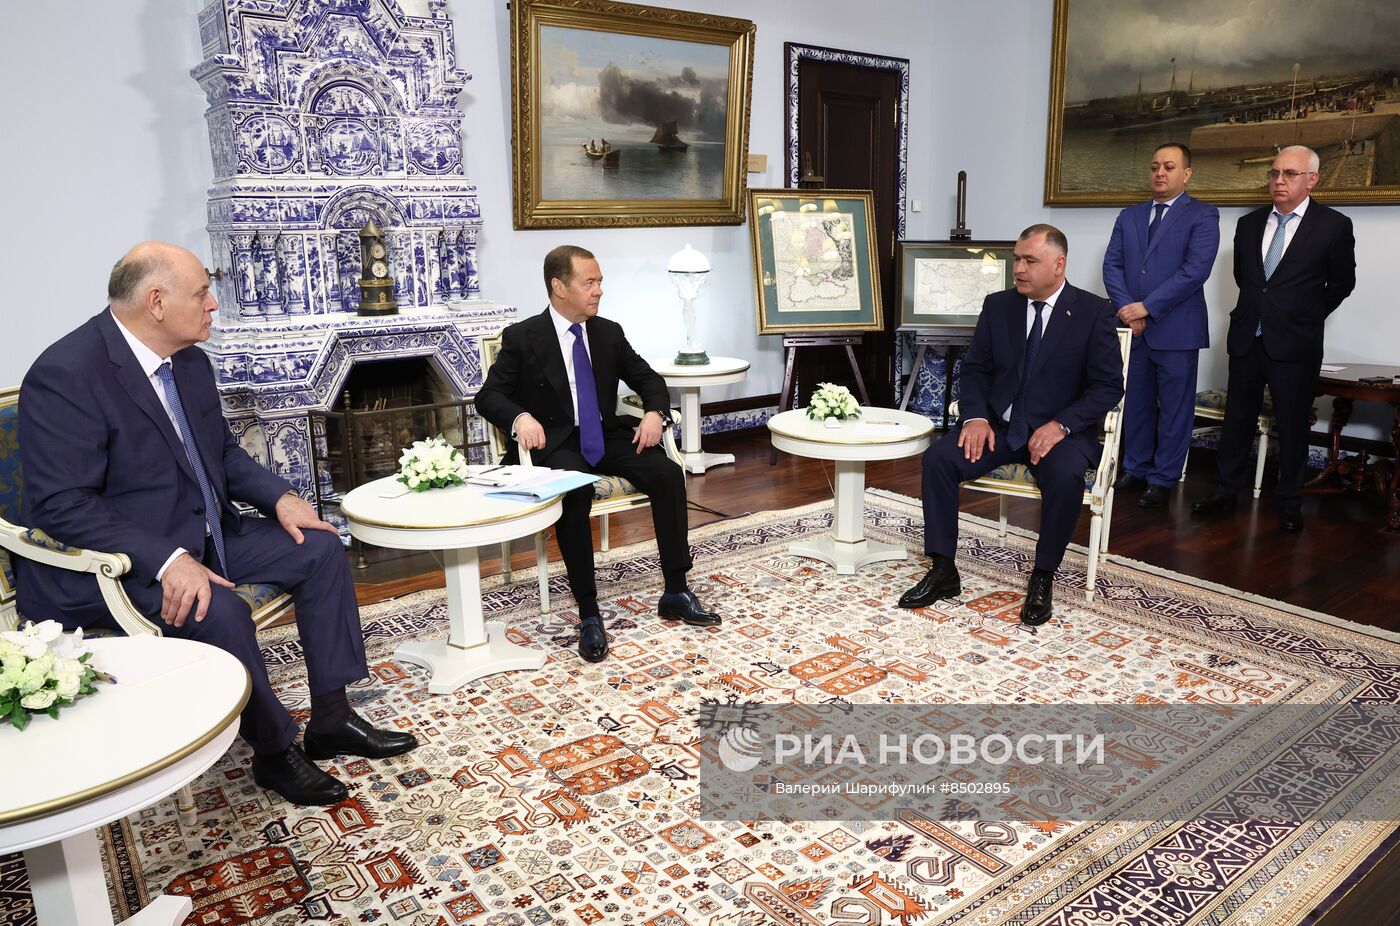 Встреча зампреда Совбеза РФ Д. Медведева с президентом Абхазии А. Бжанией и президентом Южной Осетии А. Гаглоевым